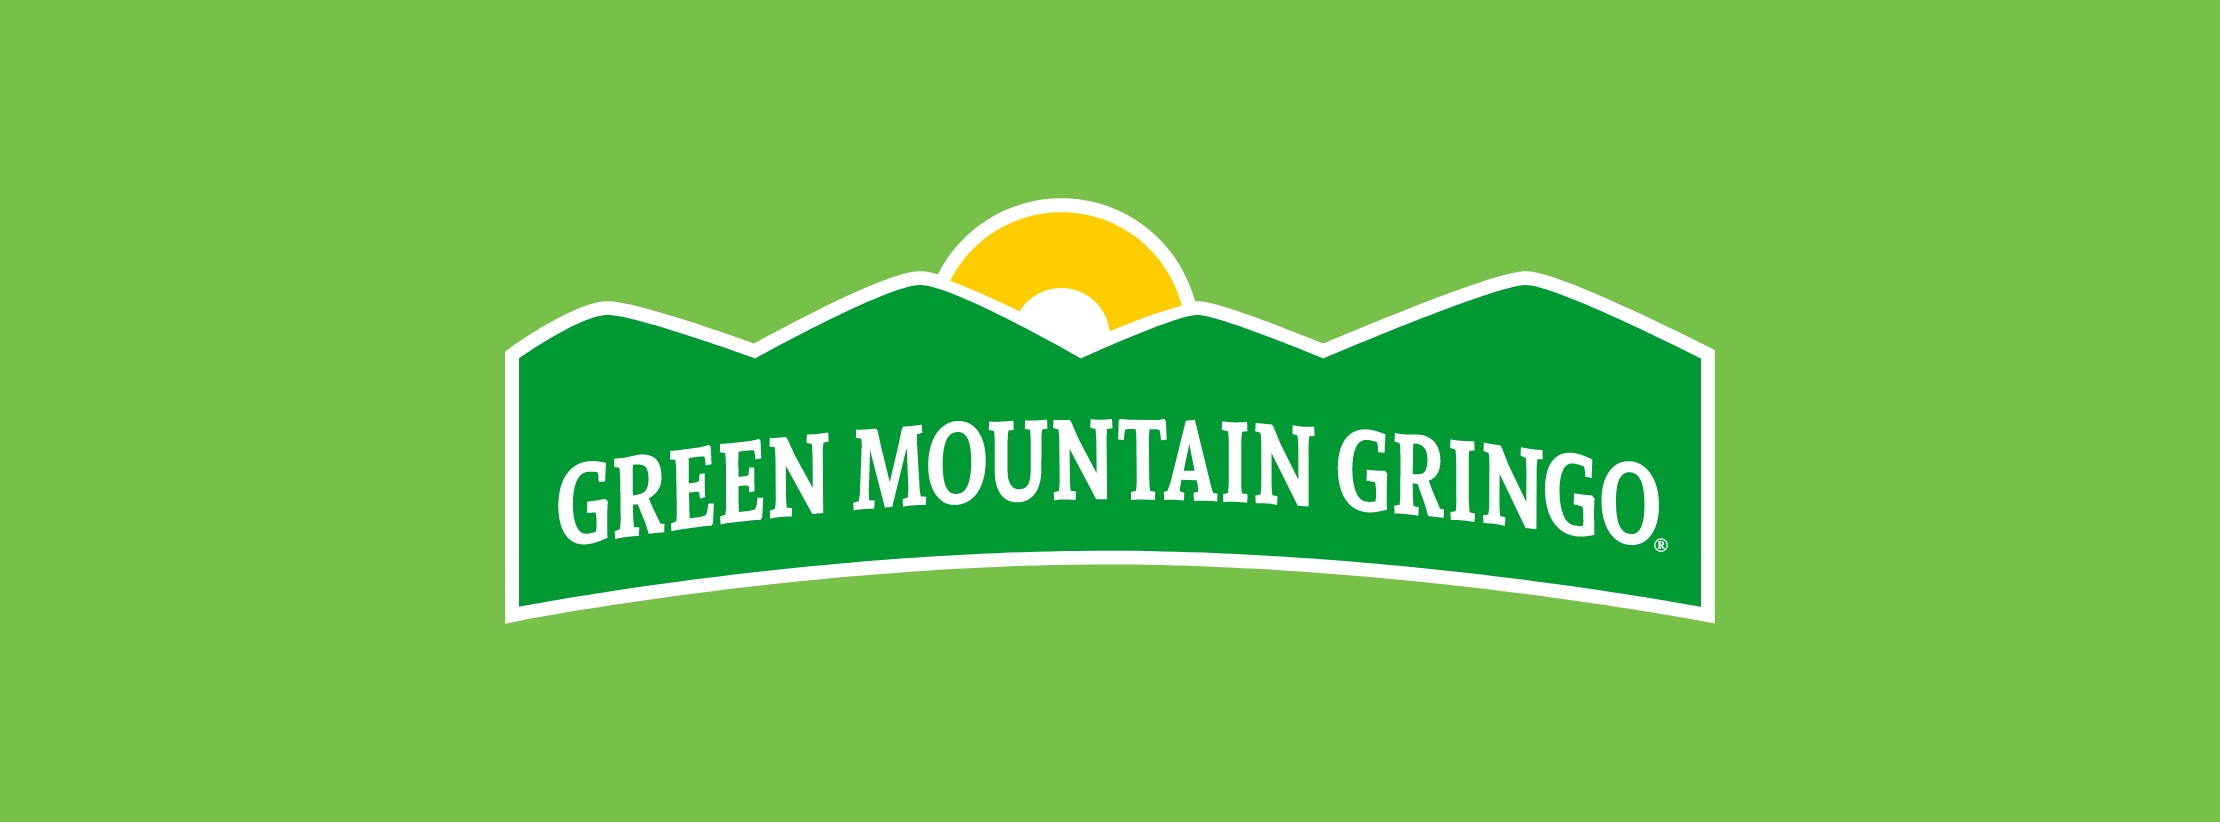 Green Mountain Gringo New Logo on Green